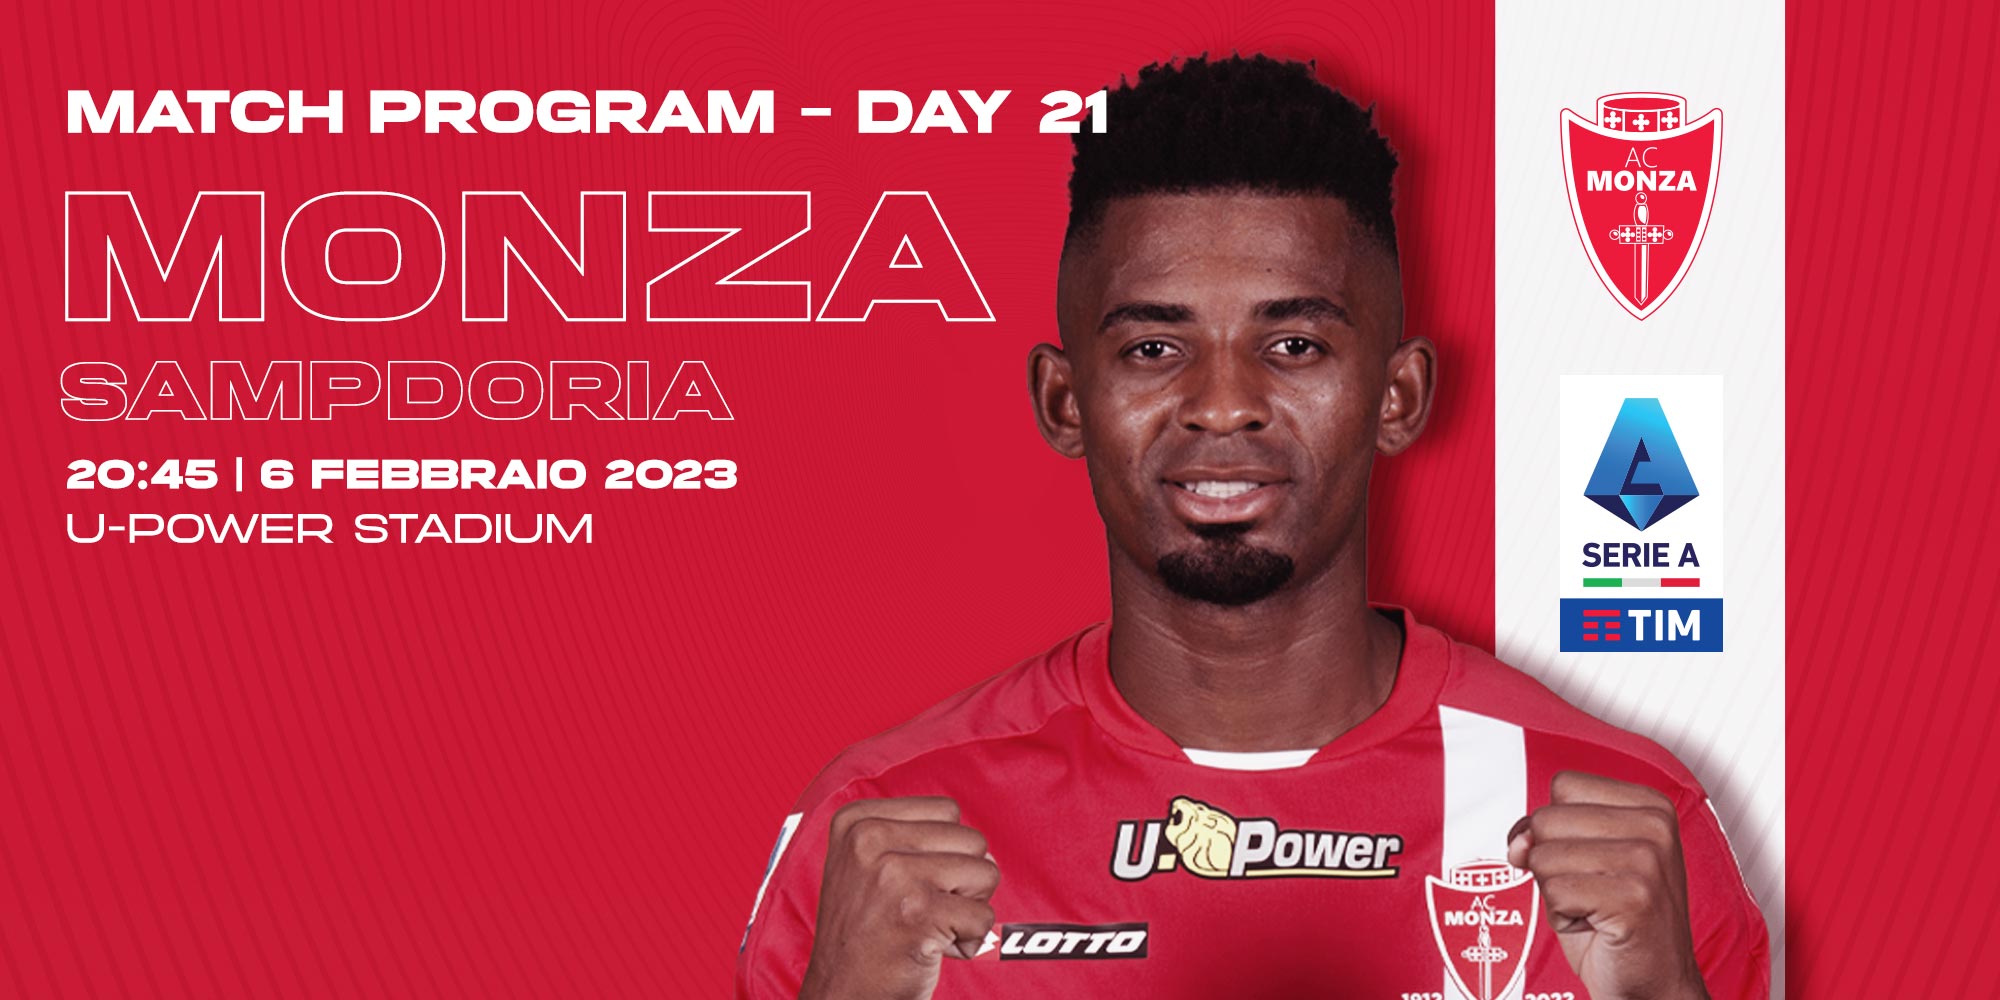 Monza - Sampdoria: Match Program